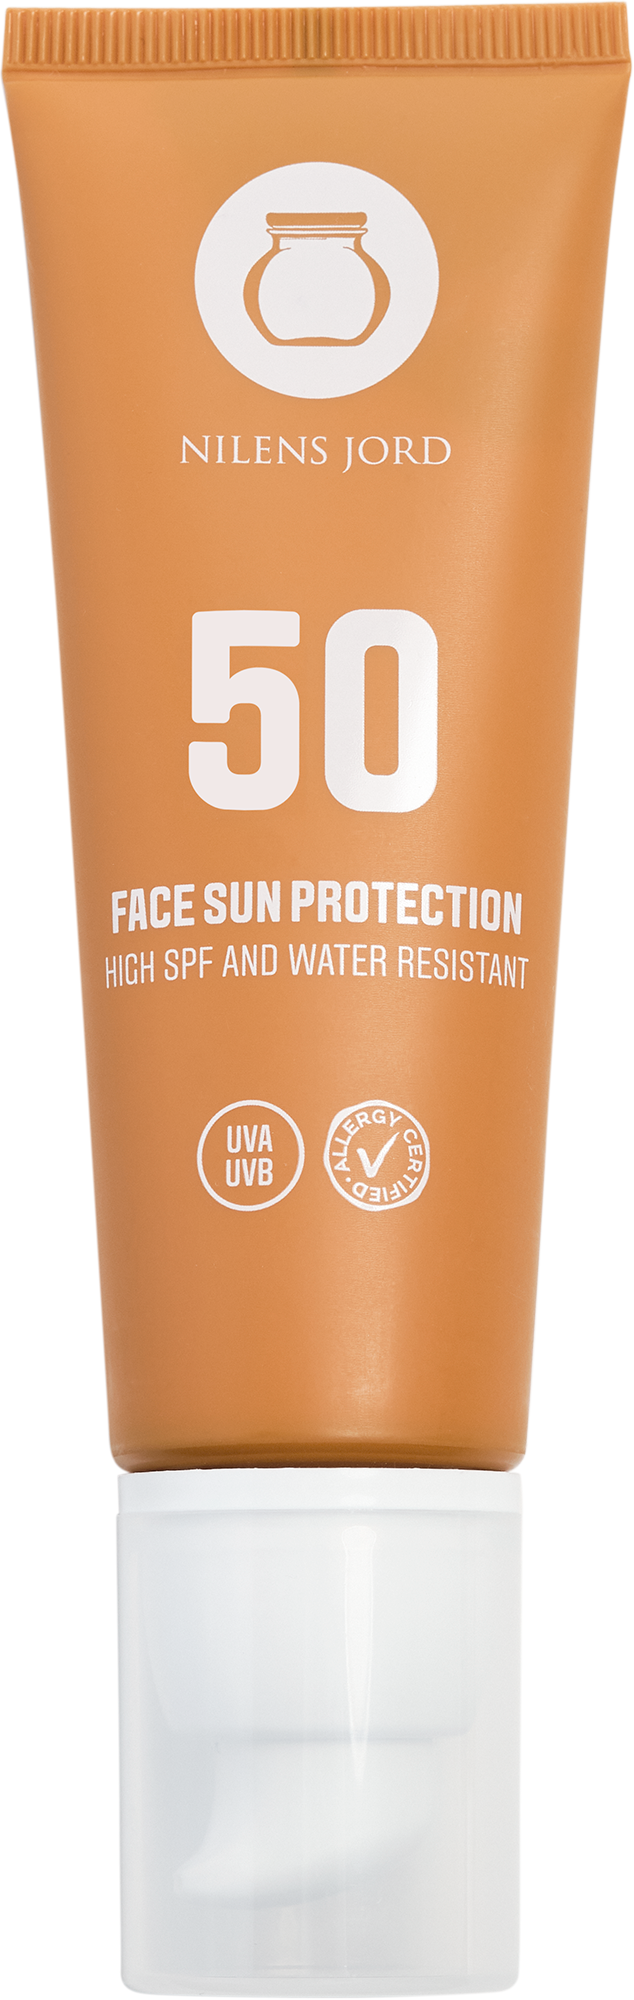 Billede af Nilens Jord Face Sun Protection SPF 50 50 ml.